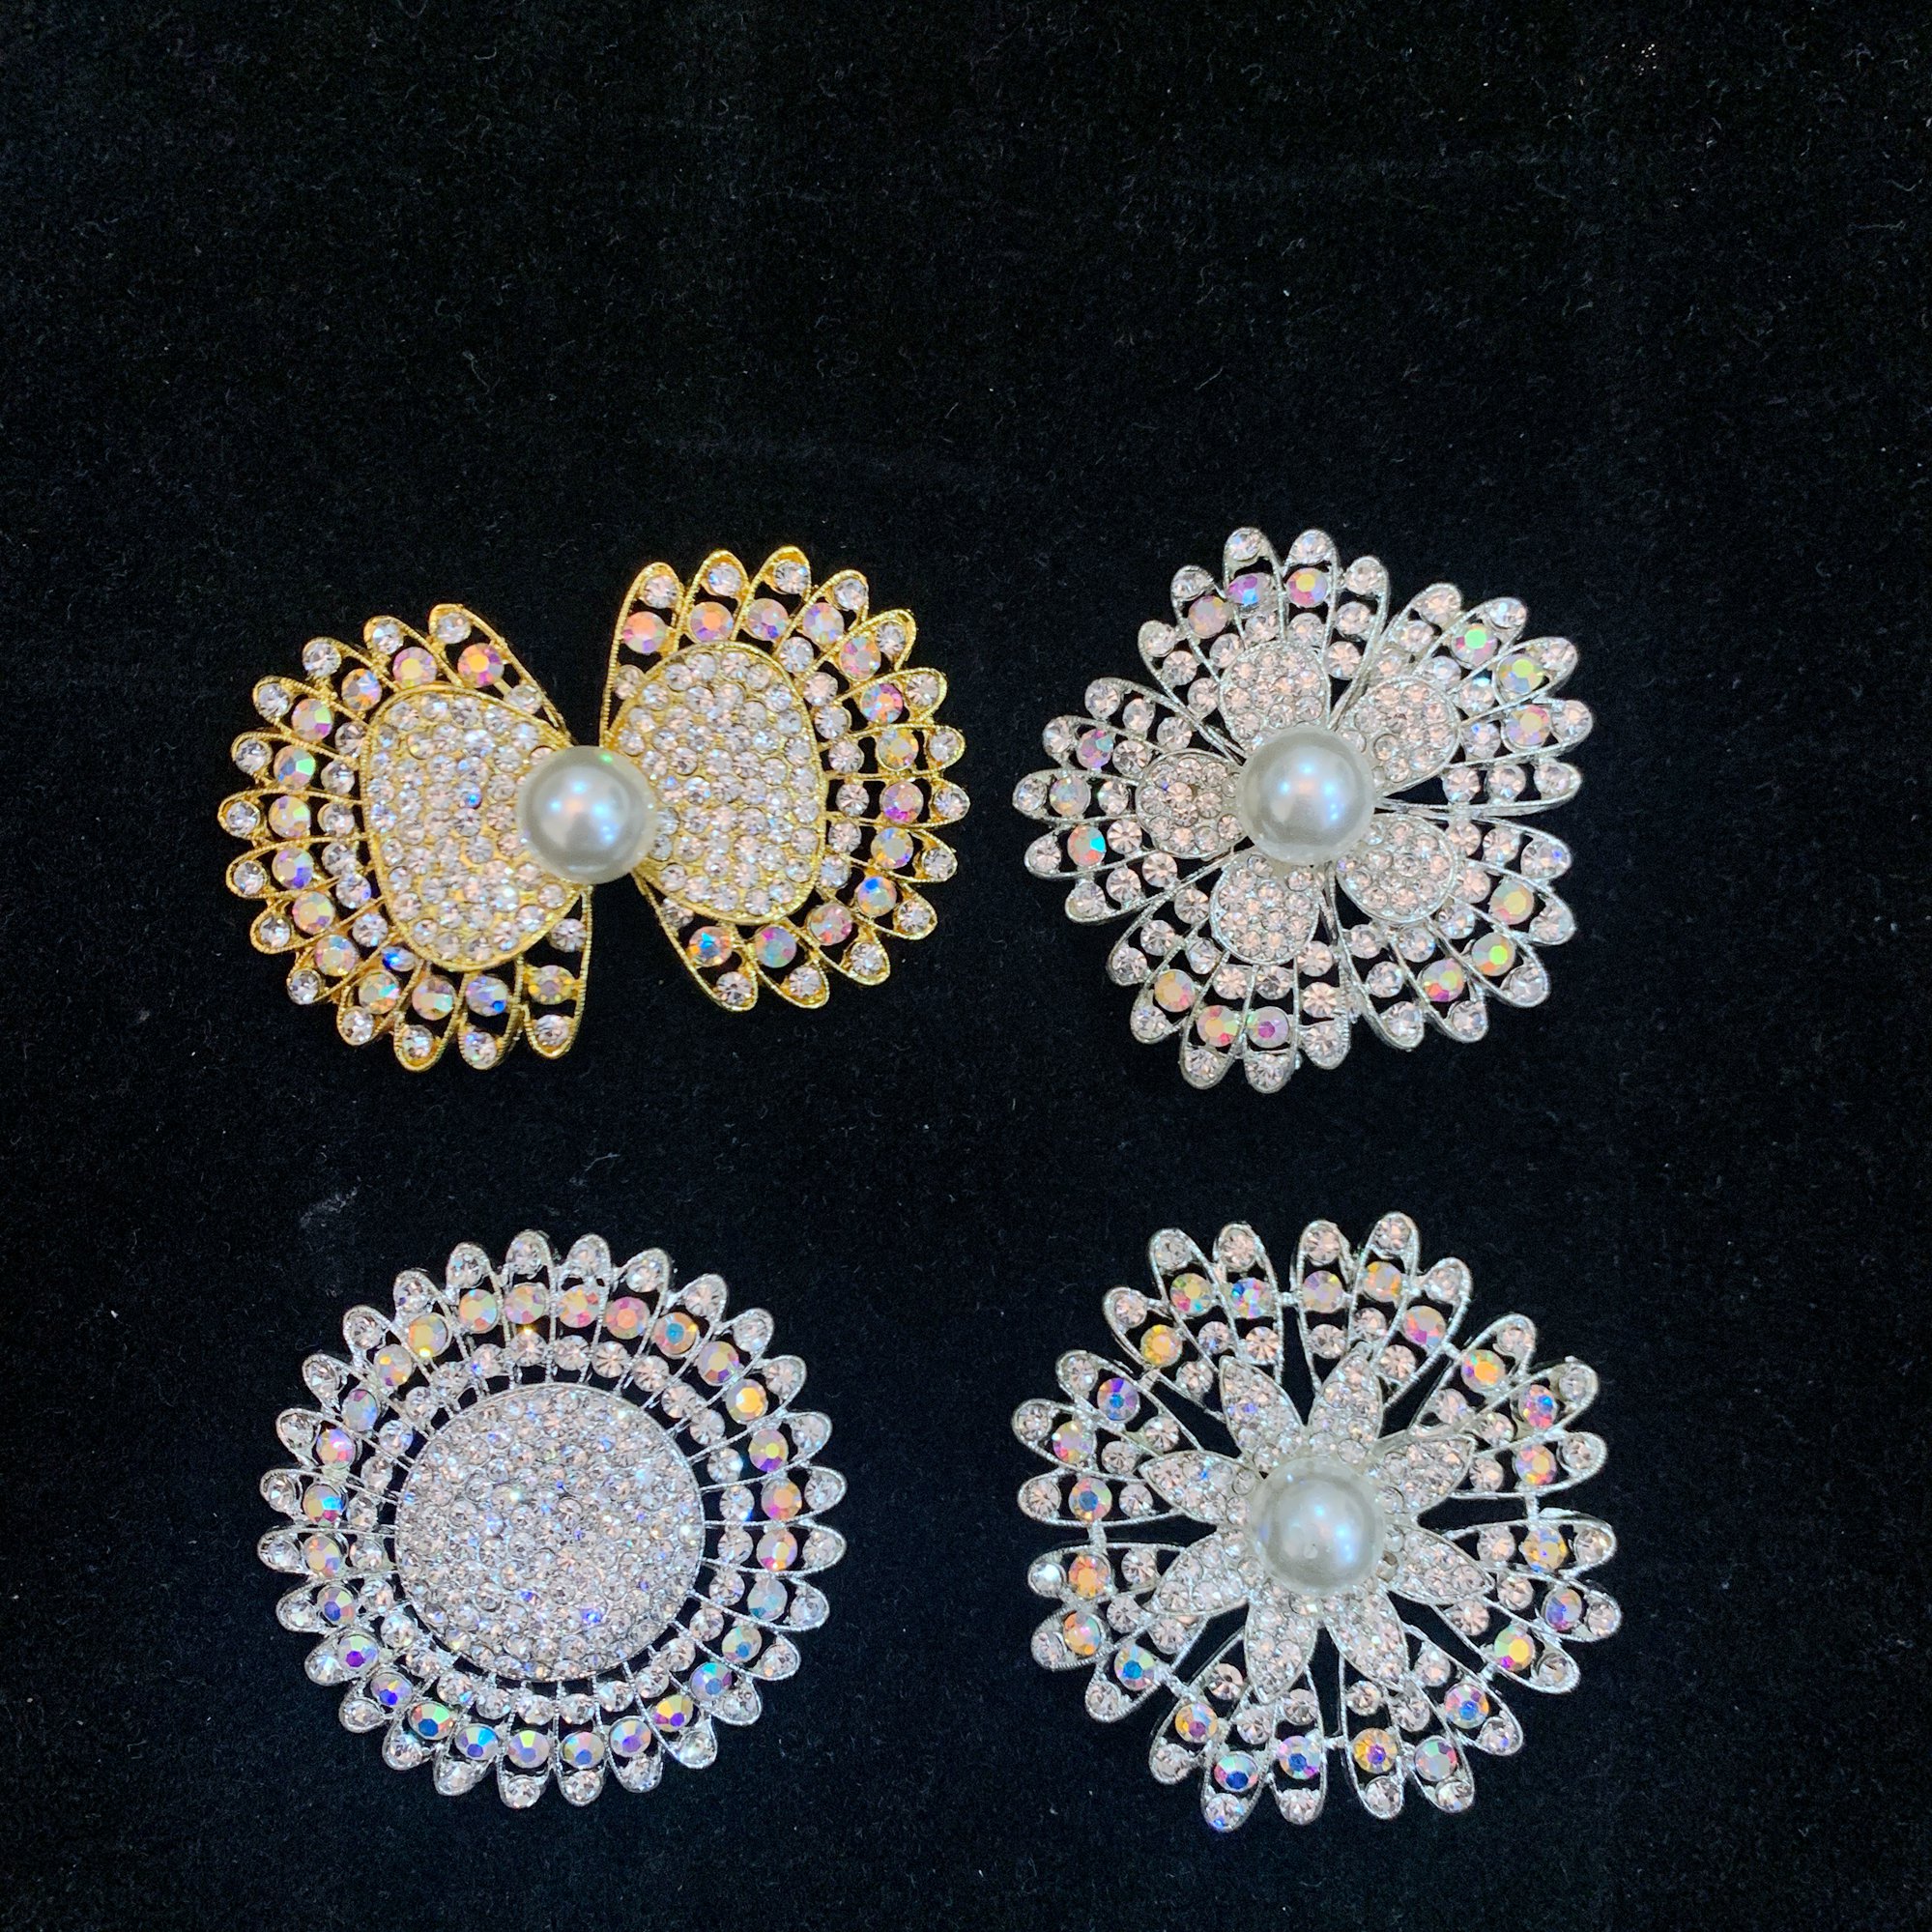 เข็มกลัด Vintage Jewelry ลายดอกไม้ แฟชั่น คลาสสิกเพชรสิทอง เข็มกลัด gold brooch